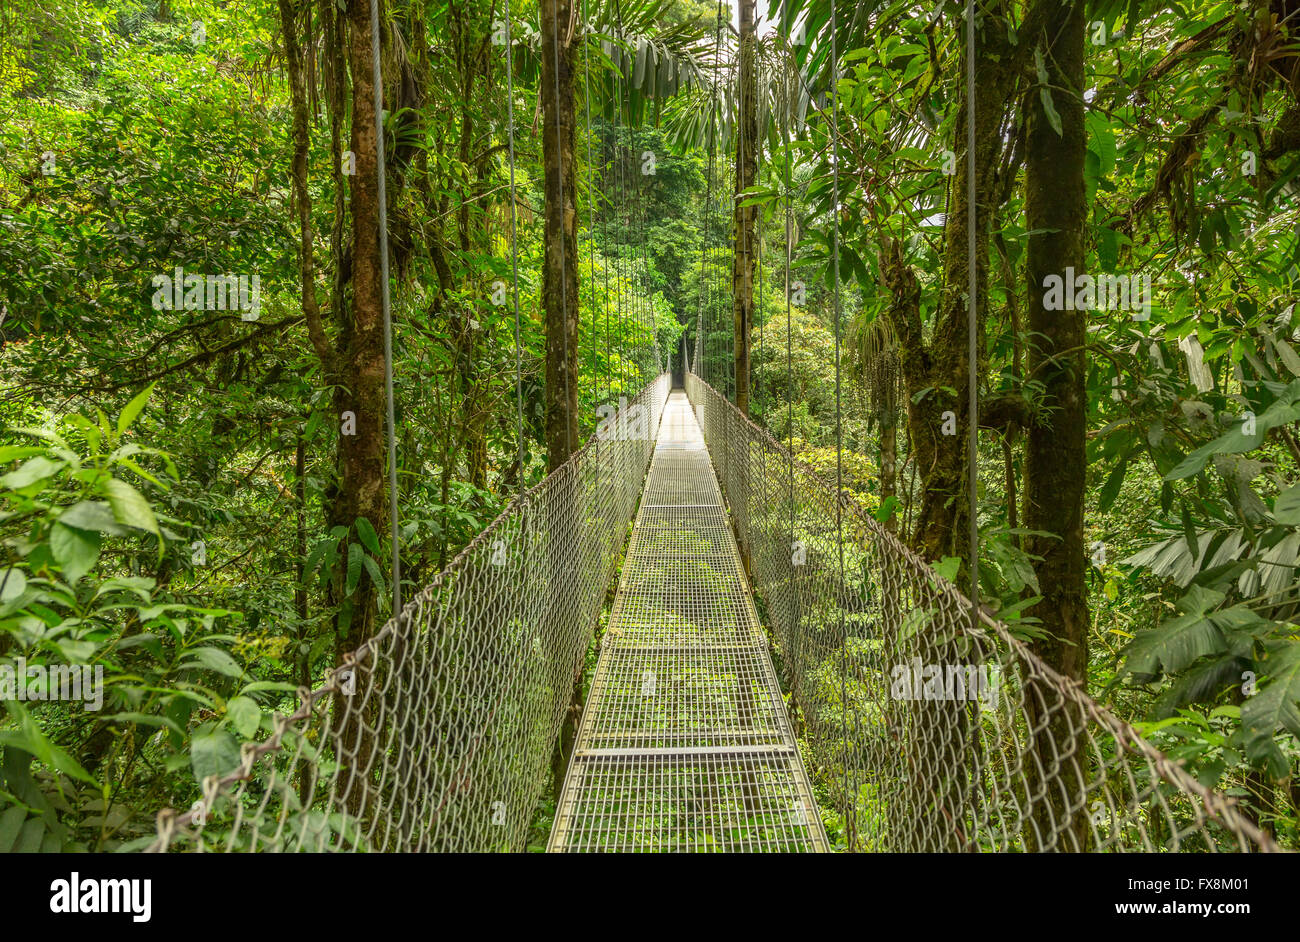 Puente colgante natural en el parque de selva tropical, Costa Rica Foto de stock